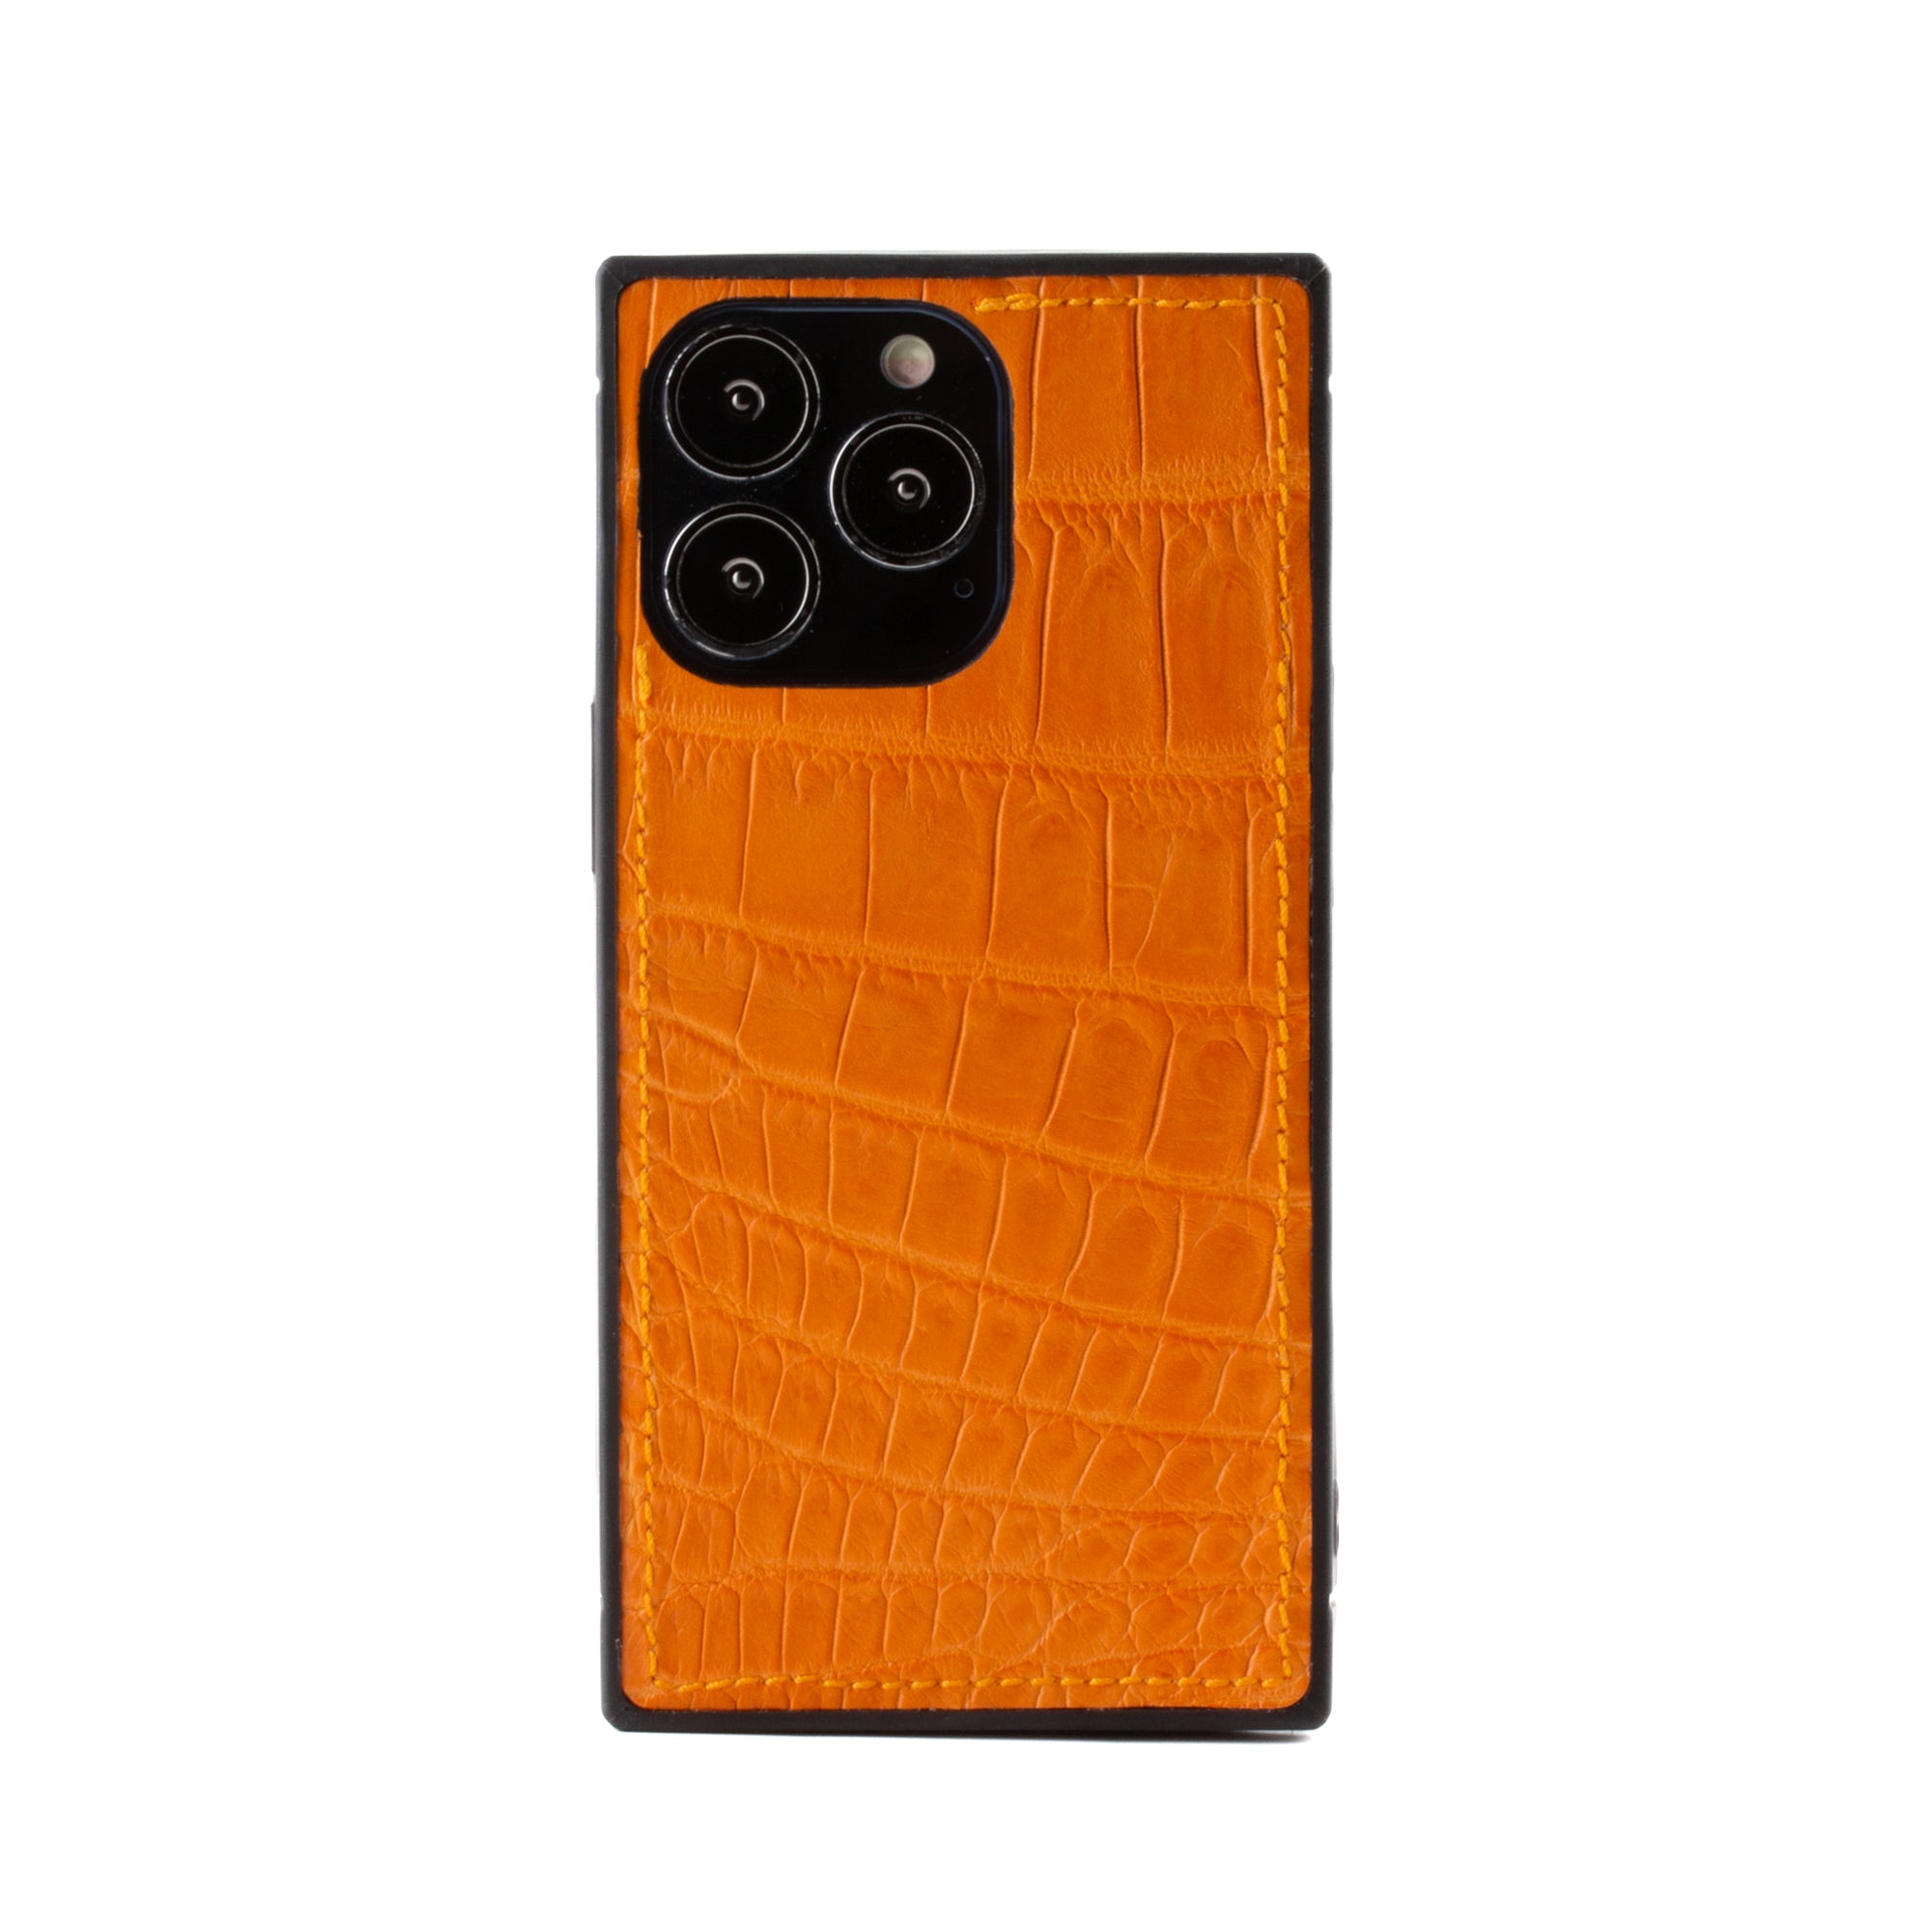 Vente exclusive - Coque "Square case" cuir pour iPhone 13 Pro - Alligator Orange